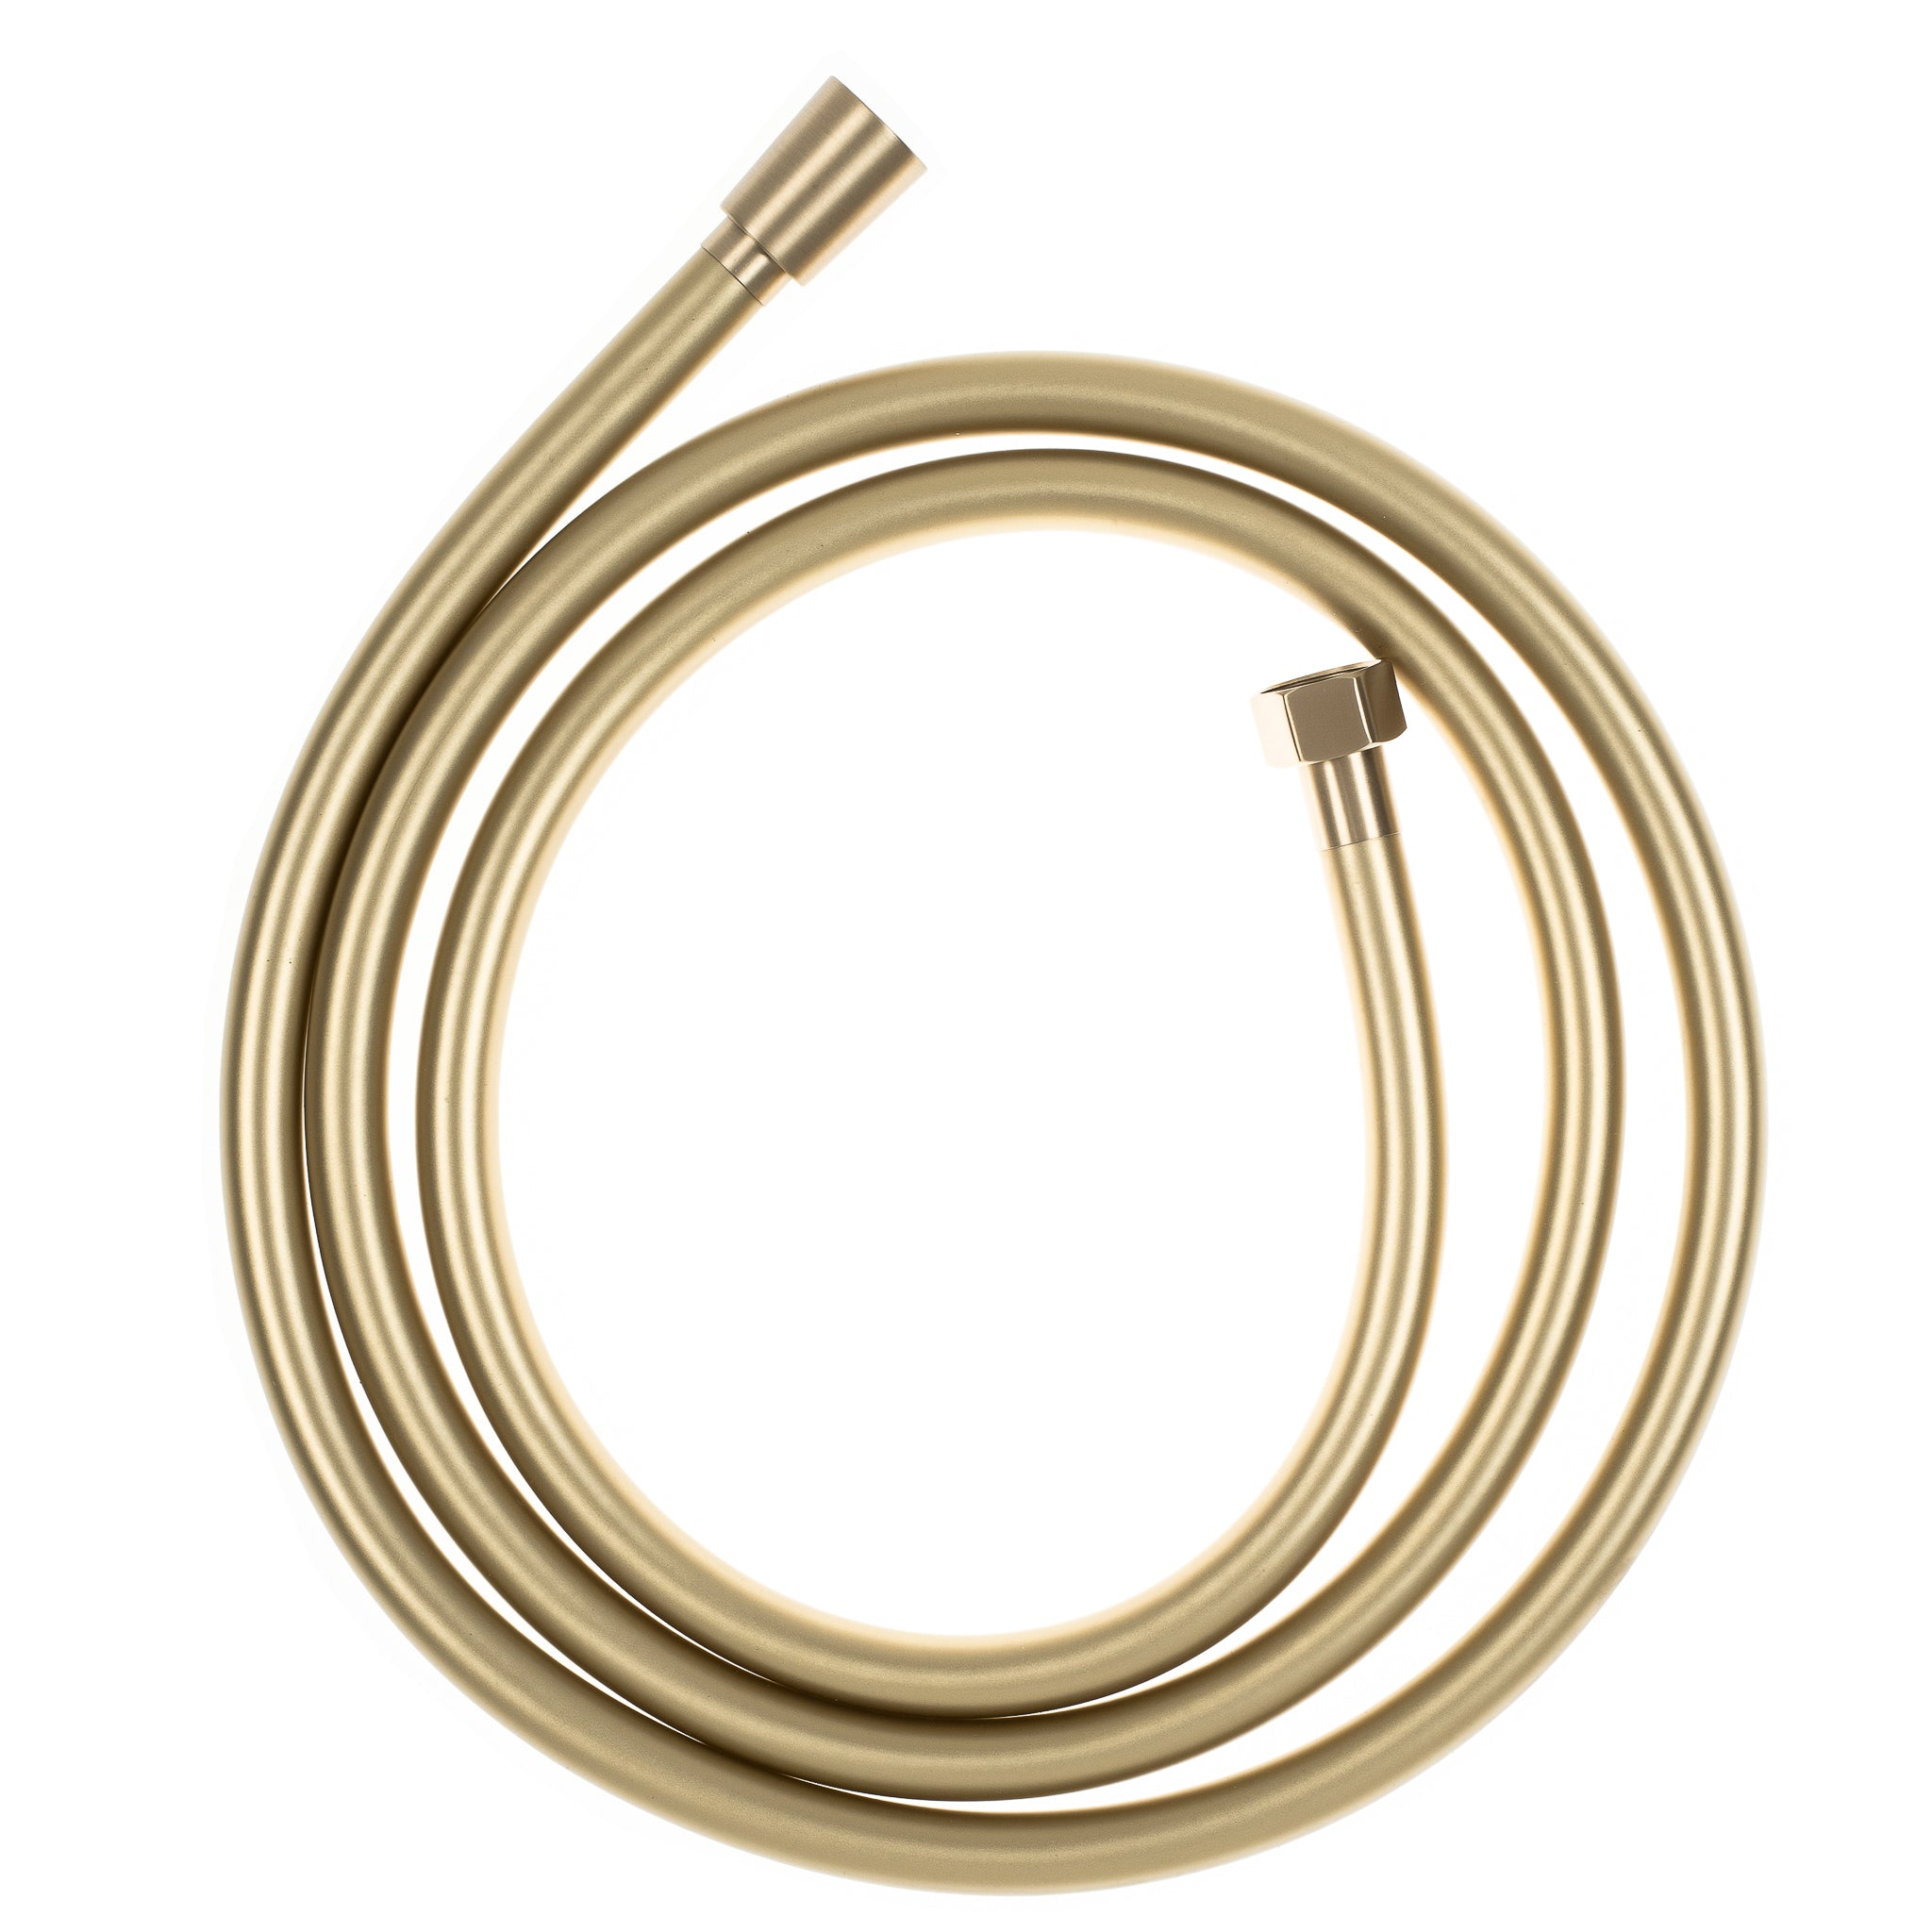 PVC Shower Hose - 1800mm, Brushed Brass (Gold)